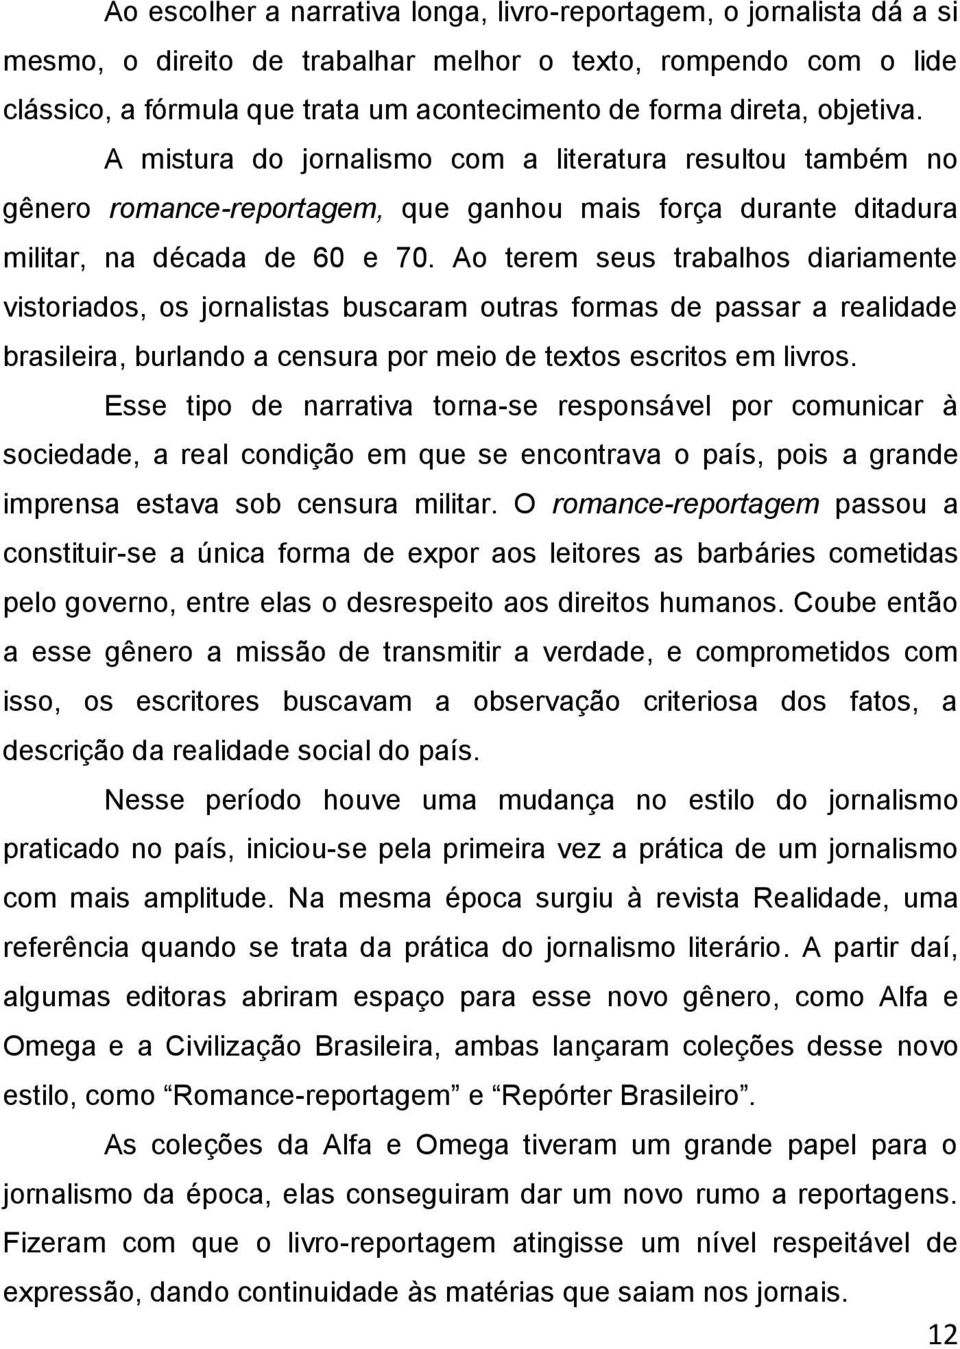 Ao terem seus trabalhos diariamente vistoriados, os jornalistas buscaram outras formas de passar a realidade brasileira, burlando a censura por meio de textos escritos em livros.